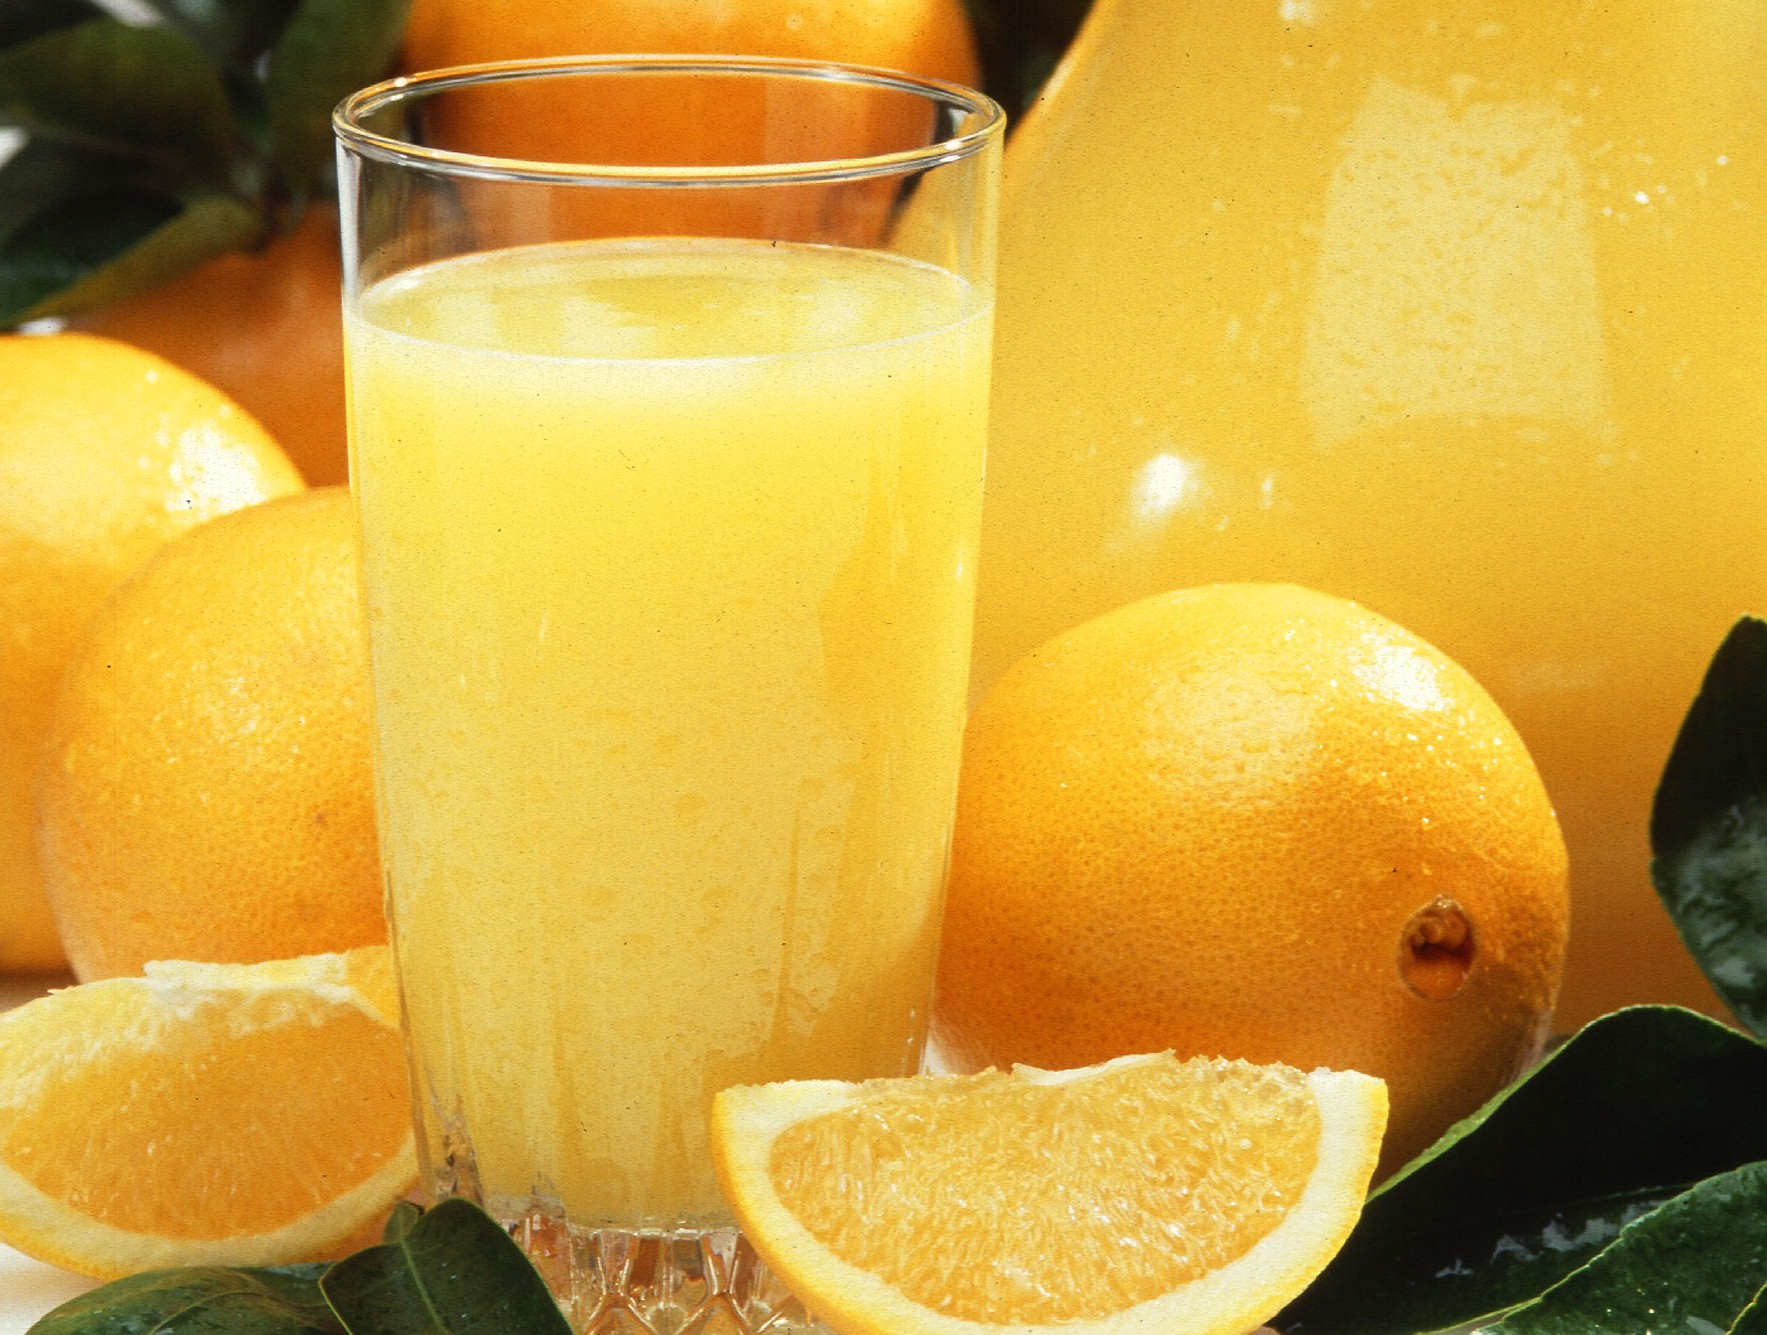 Oranges, orange juice, photo by Scott Bauer/USDA.